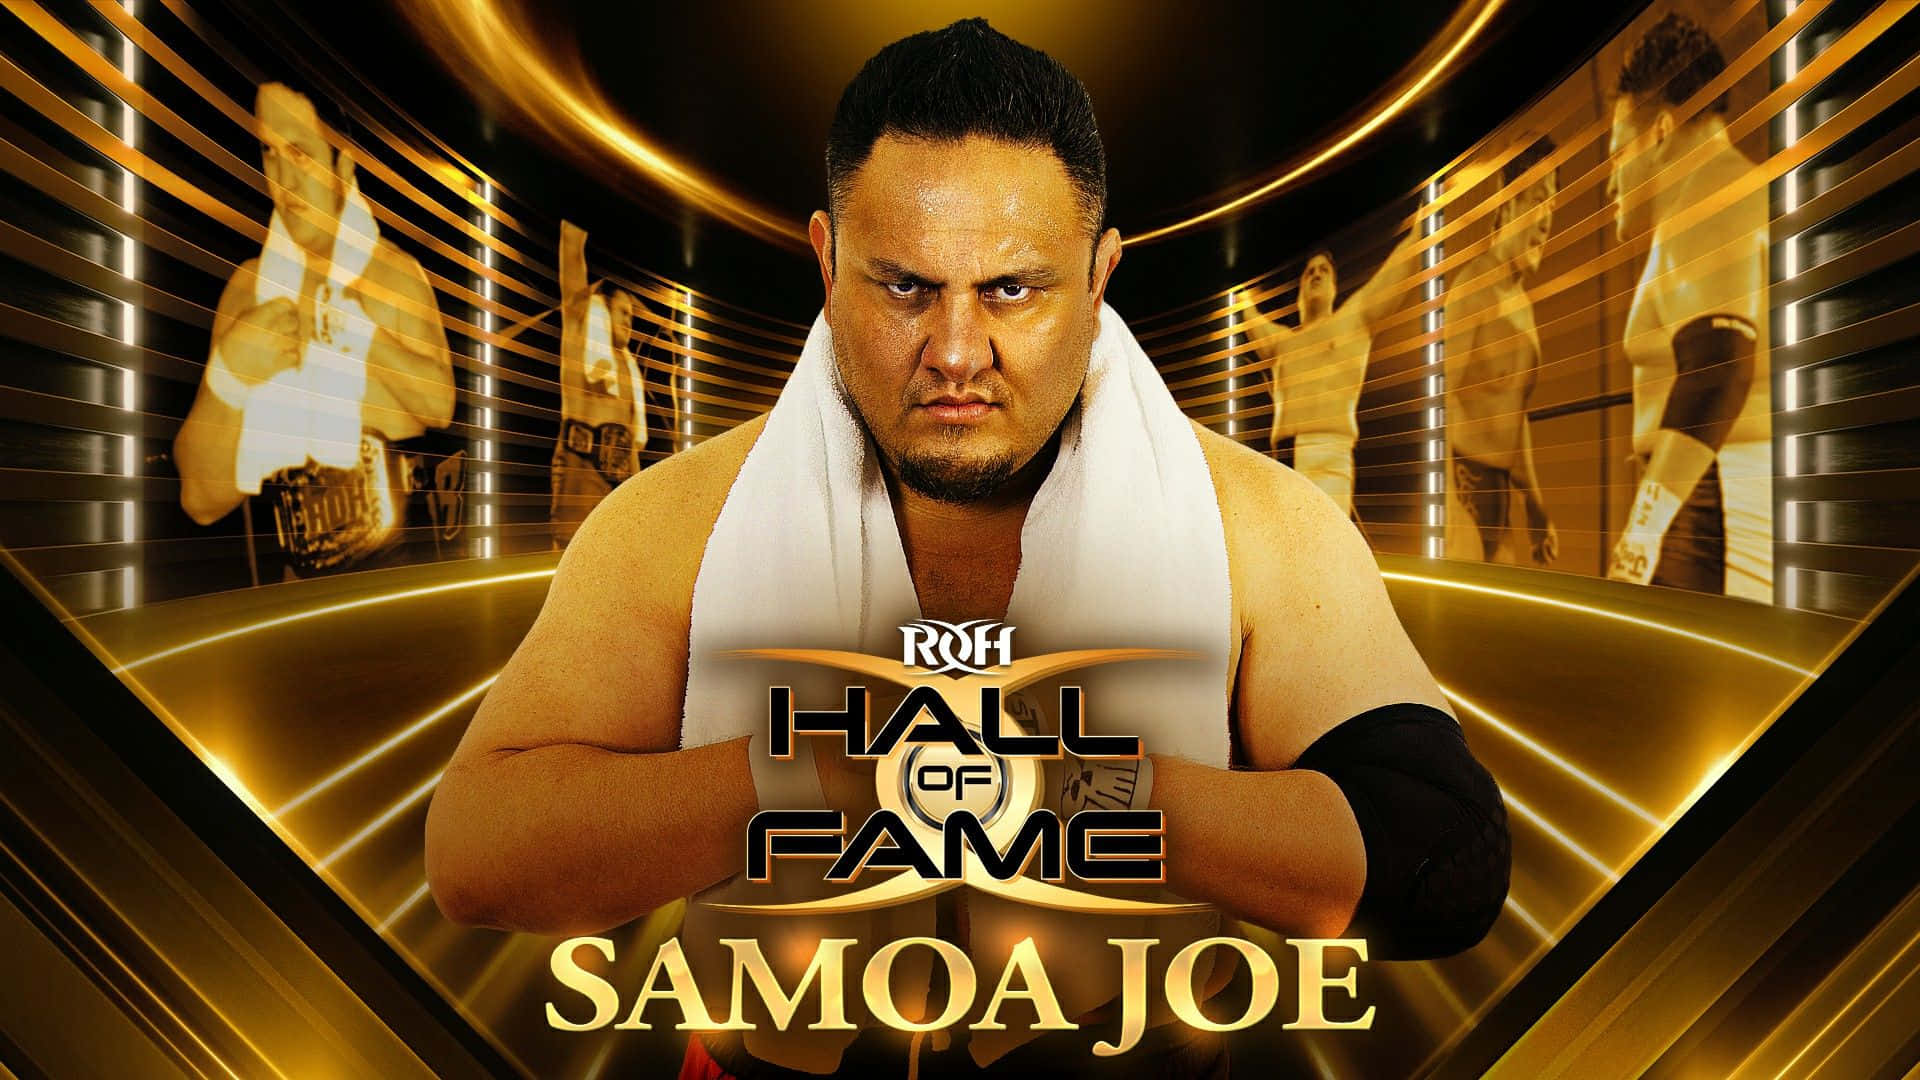 Samoajoe Ring Of Honor Hall Of Fame - Samoa Joe Ring Of Honor Hall Of Fame Wallpaper